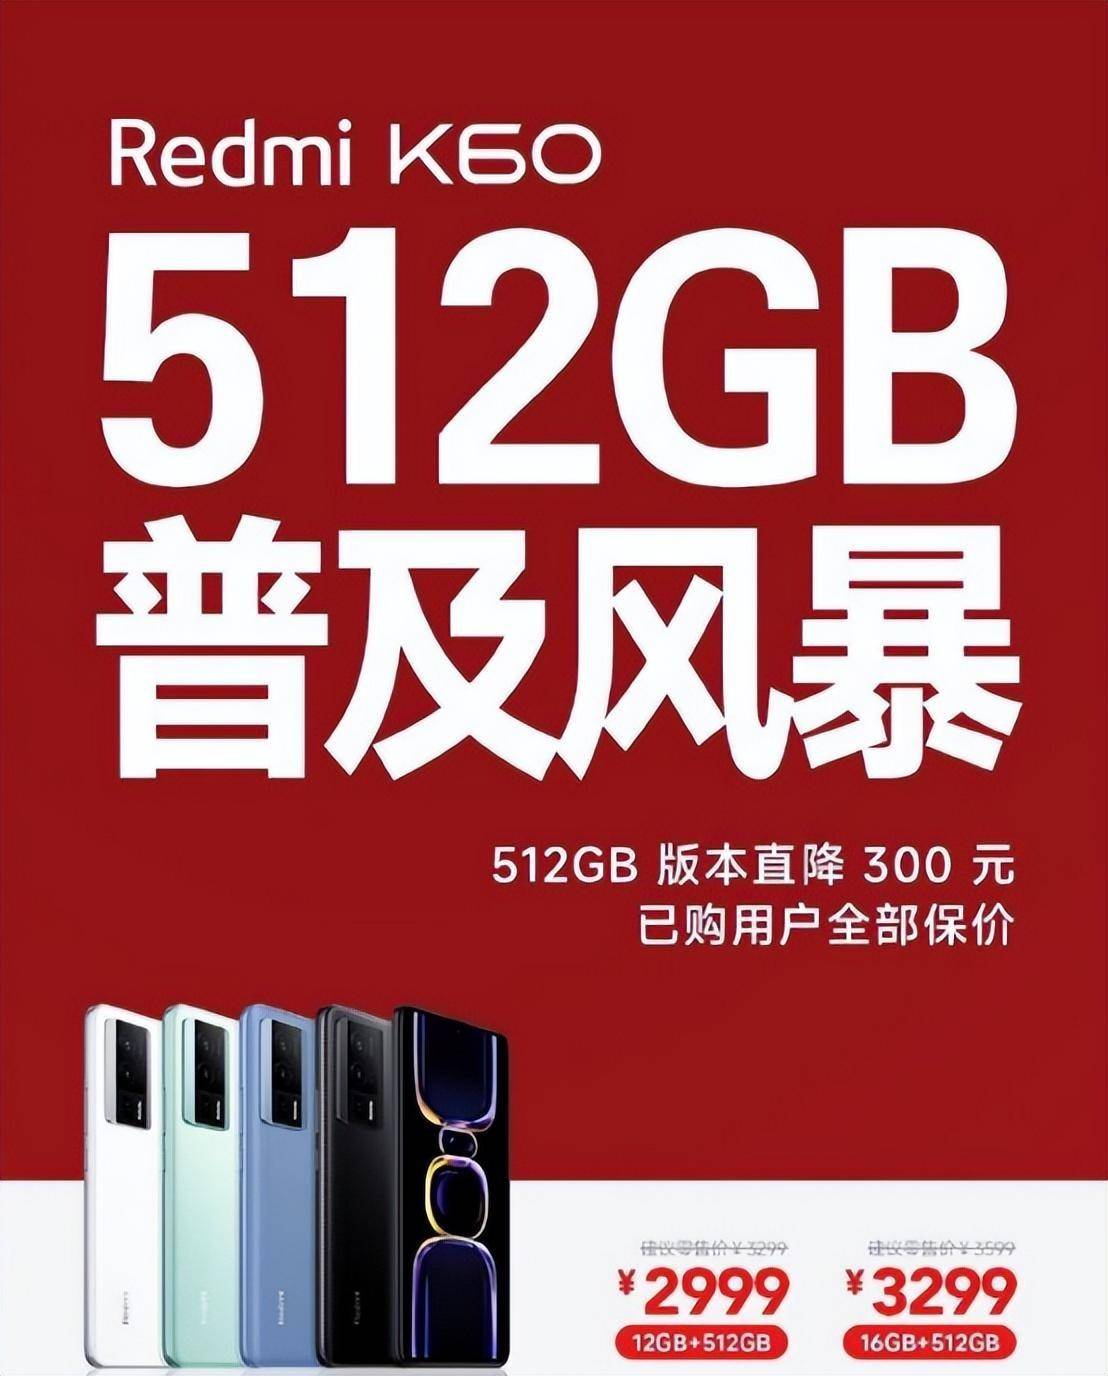 苹果13版本价格对比图:Redmi开启512GB普及风暴， 直降300已卖断货